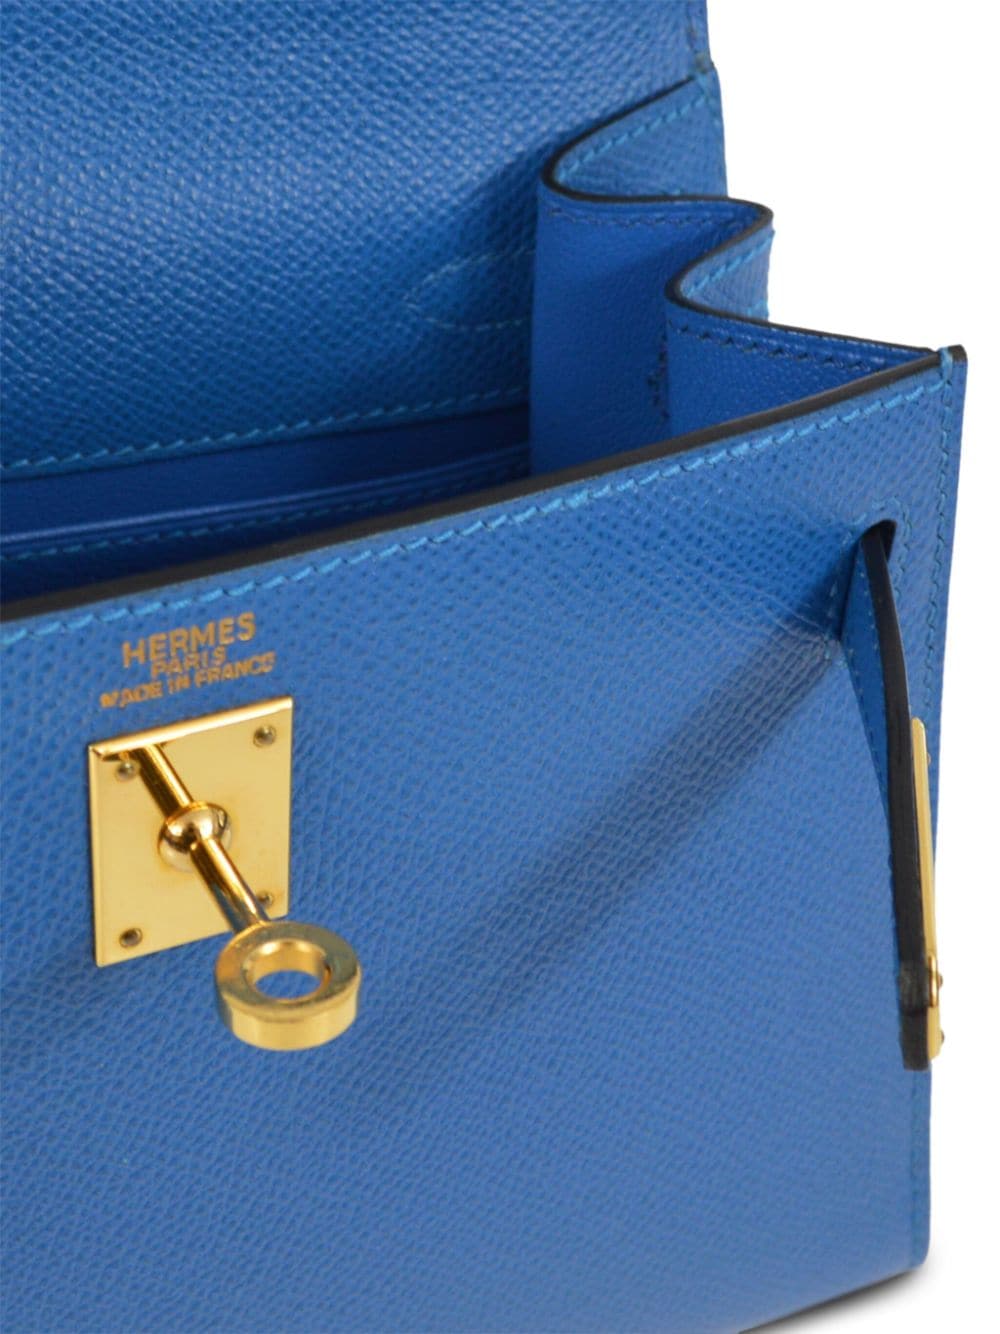 Pre-owned Hermes 2003 Kelly 20 Two-way Handbag In Blue